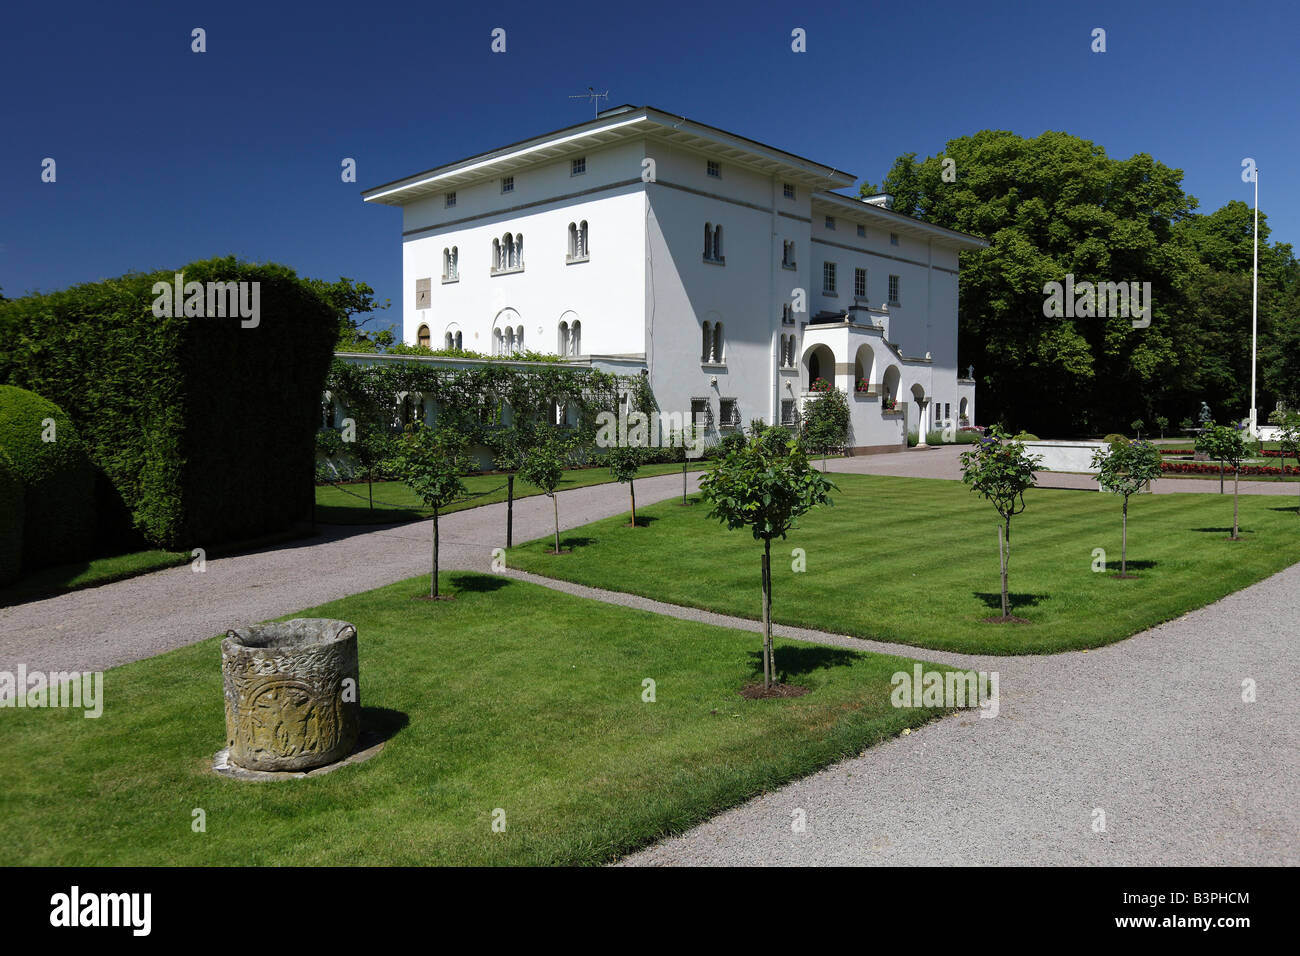 Solliden Palace, residenza estiva della famiglia reale, Oeland, contea di Kalmar, in Svezia, in Scandinavia, Europa Foto Stock